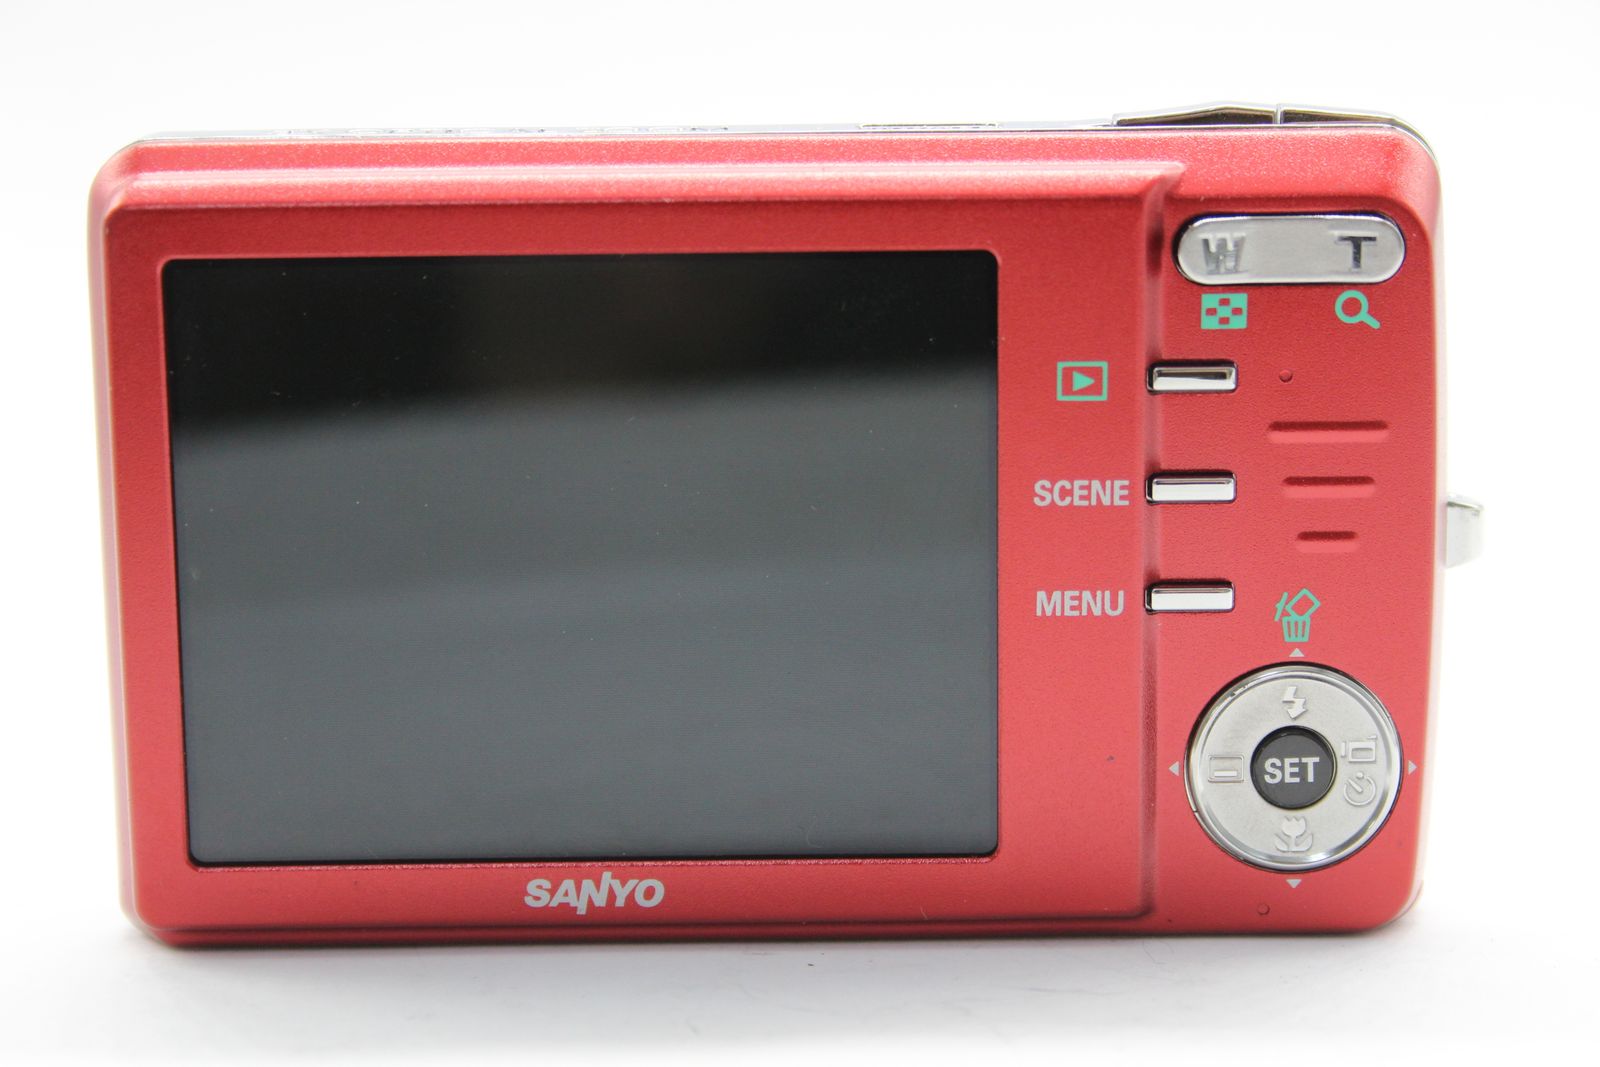 【美品 返品保証】 サンヨー SANYO Xacti DSC-X1200 レッド 3x バッテリー付き コンパクトデジタルカメラ  s5995